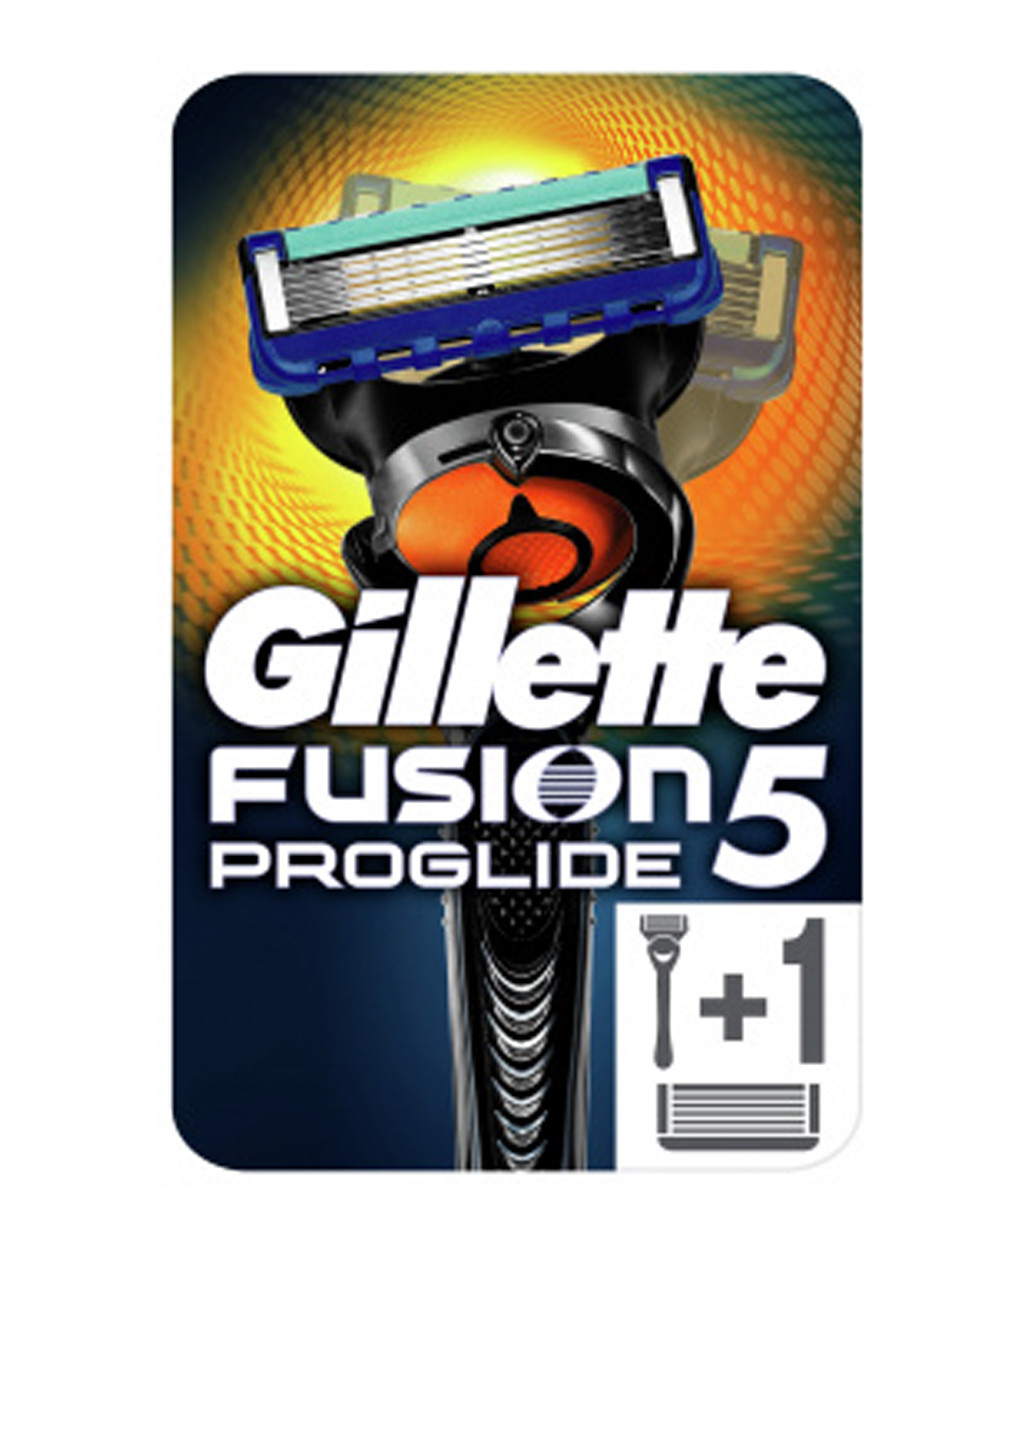 Станок-бритва Fusion5 ProGlide Flexball c 2 сменными картриджами Gillette (138200792)